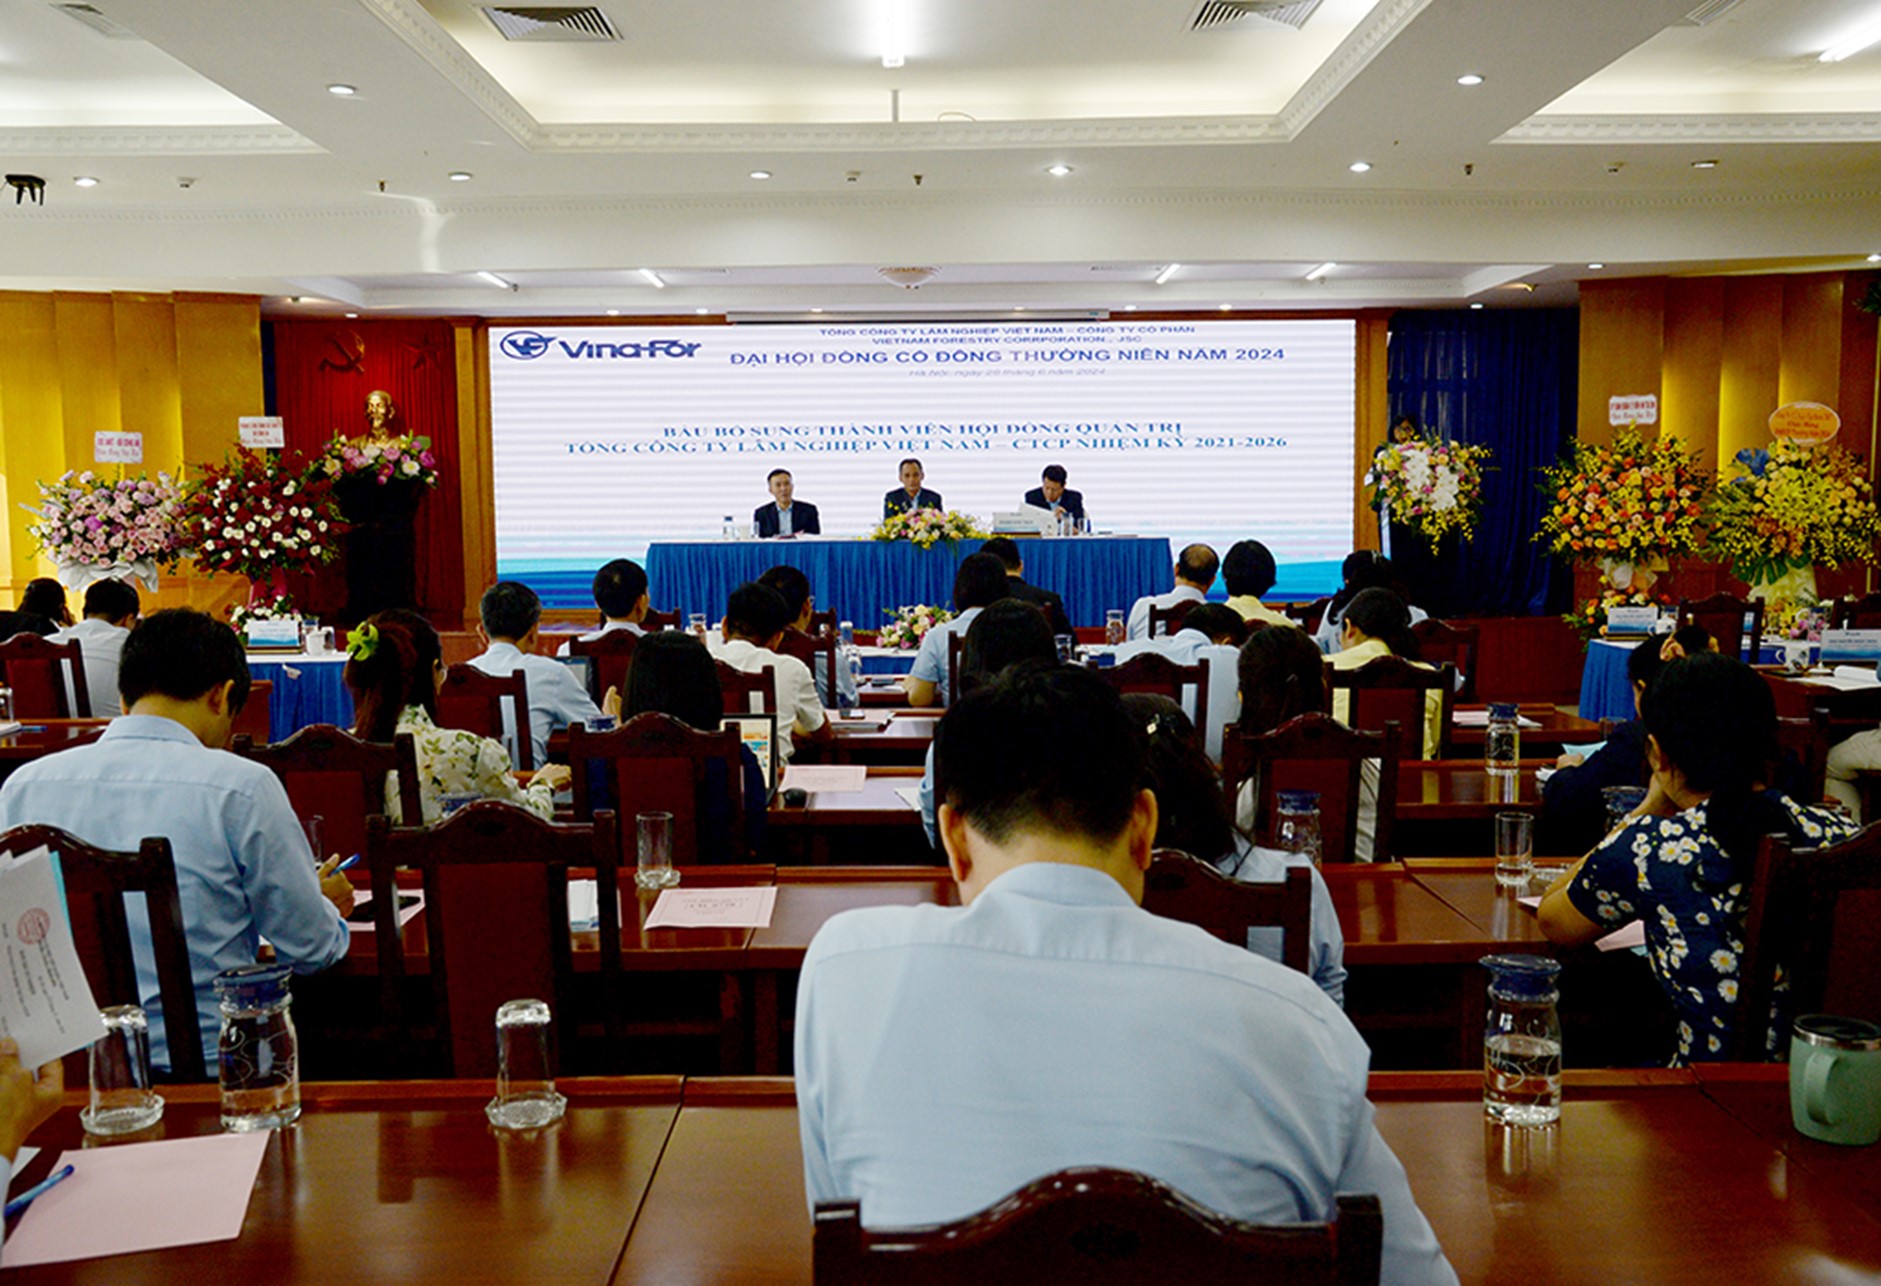 Tổng công ty Lâm nghiệp Việt Nam tổ chức thành công Đại hội đồng cổ đông thường niên năm 2024